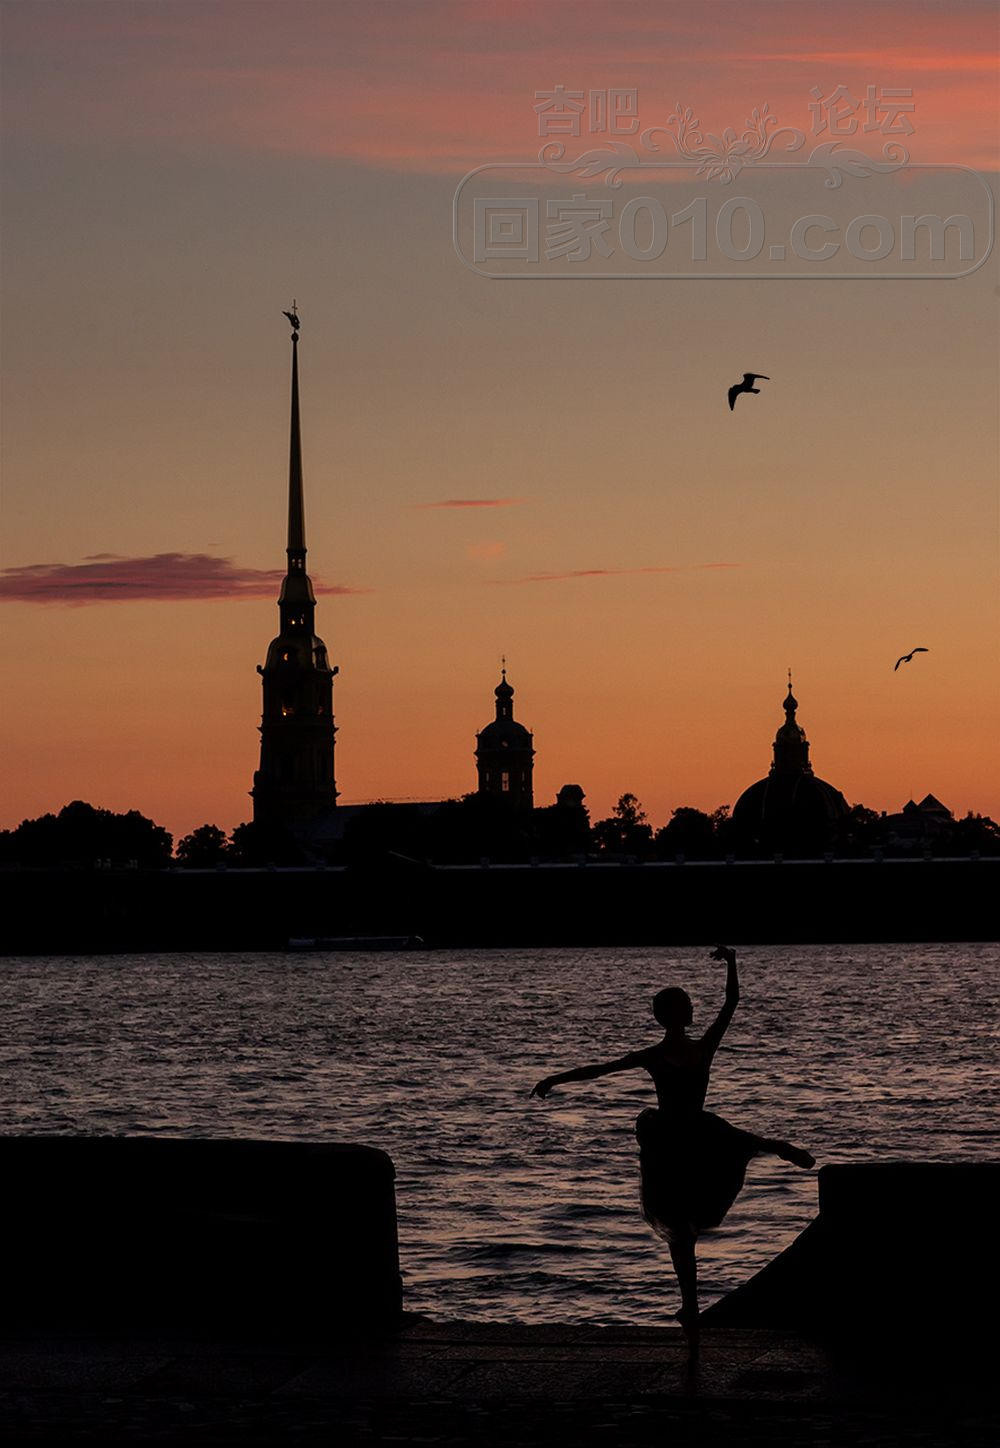 dance at sunset by DenisGoncharov on DeviantArt.jpg